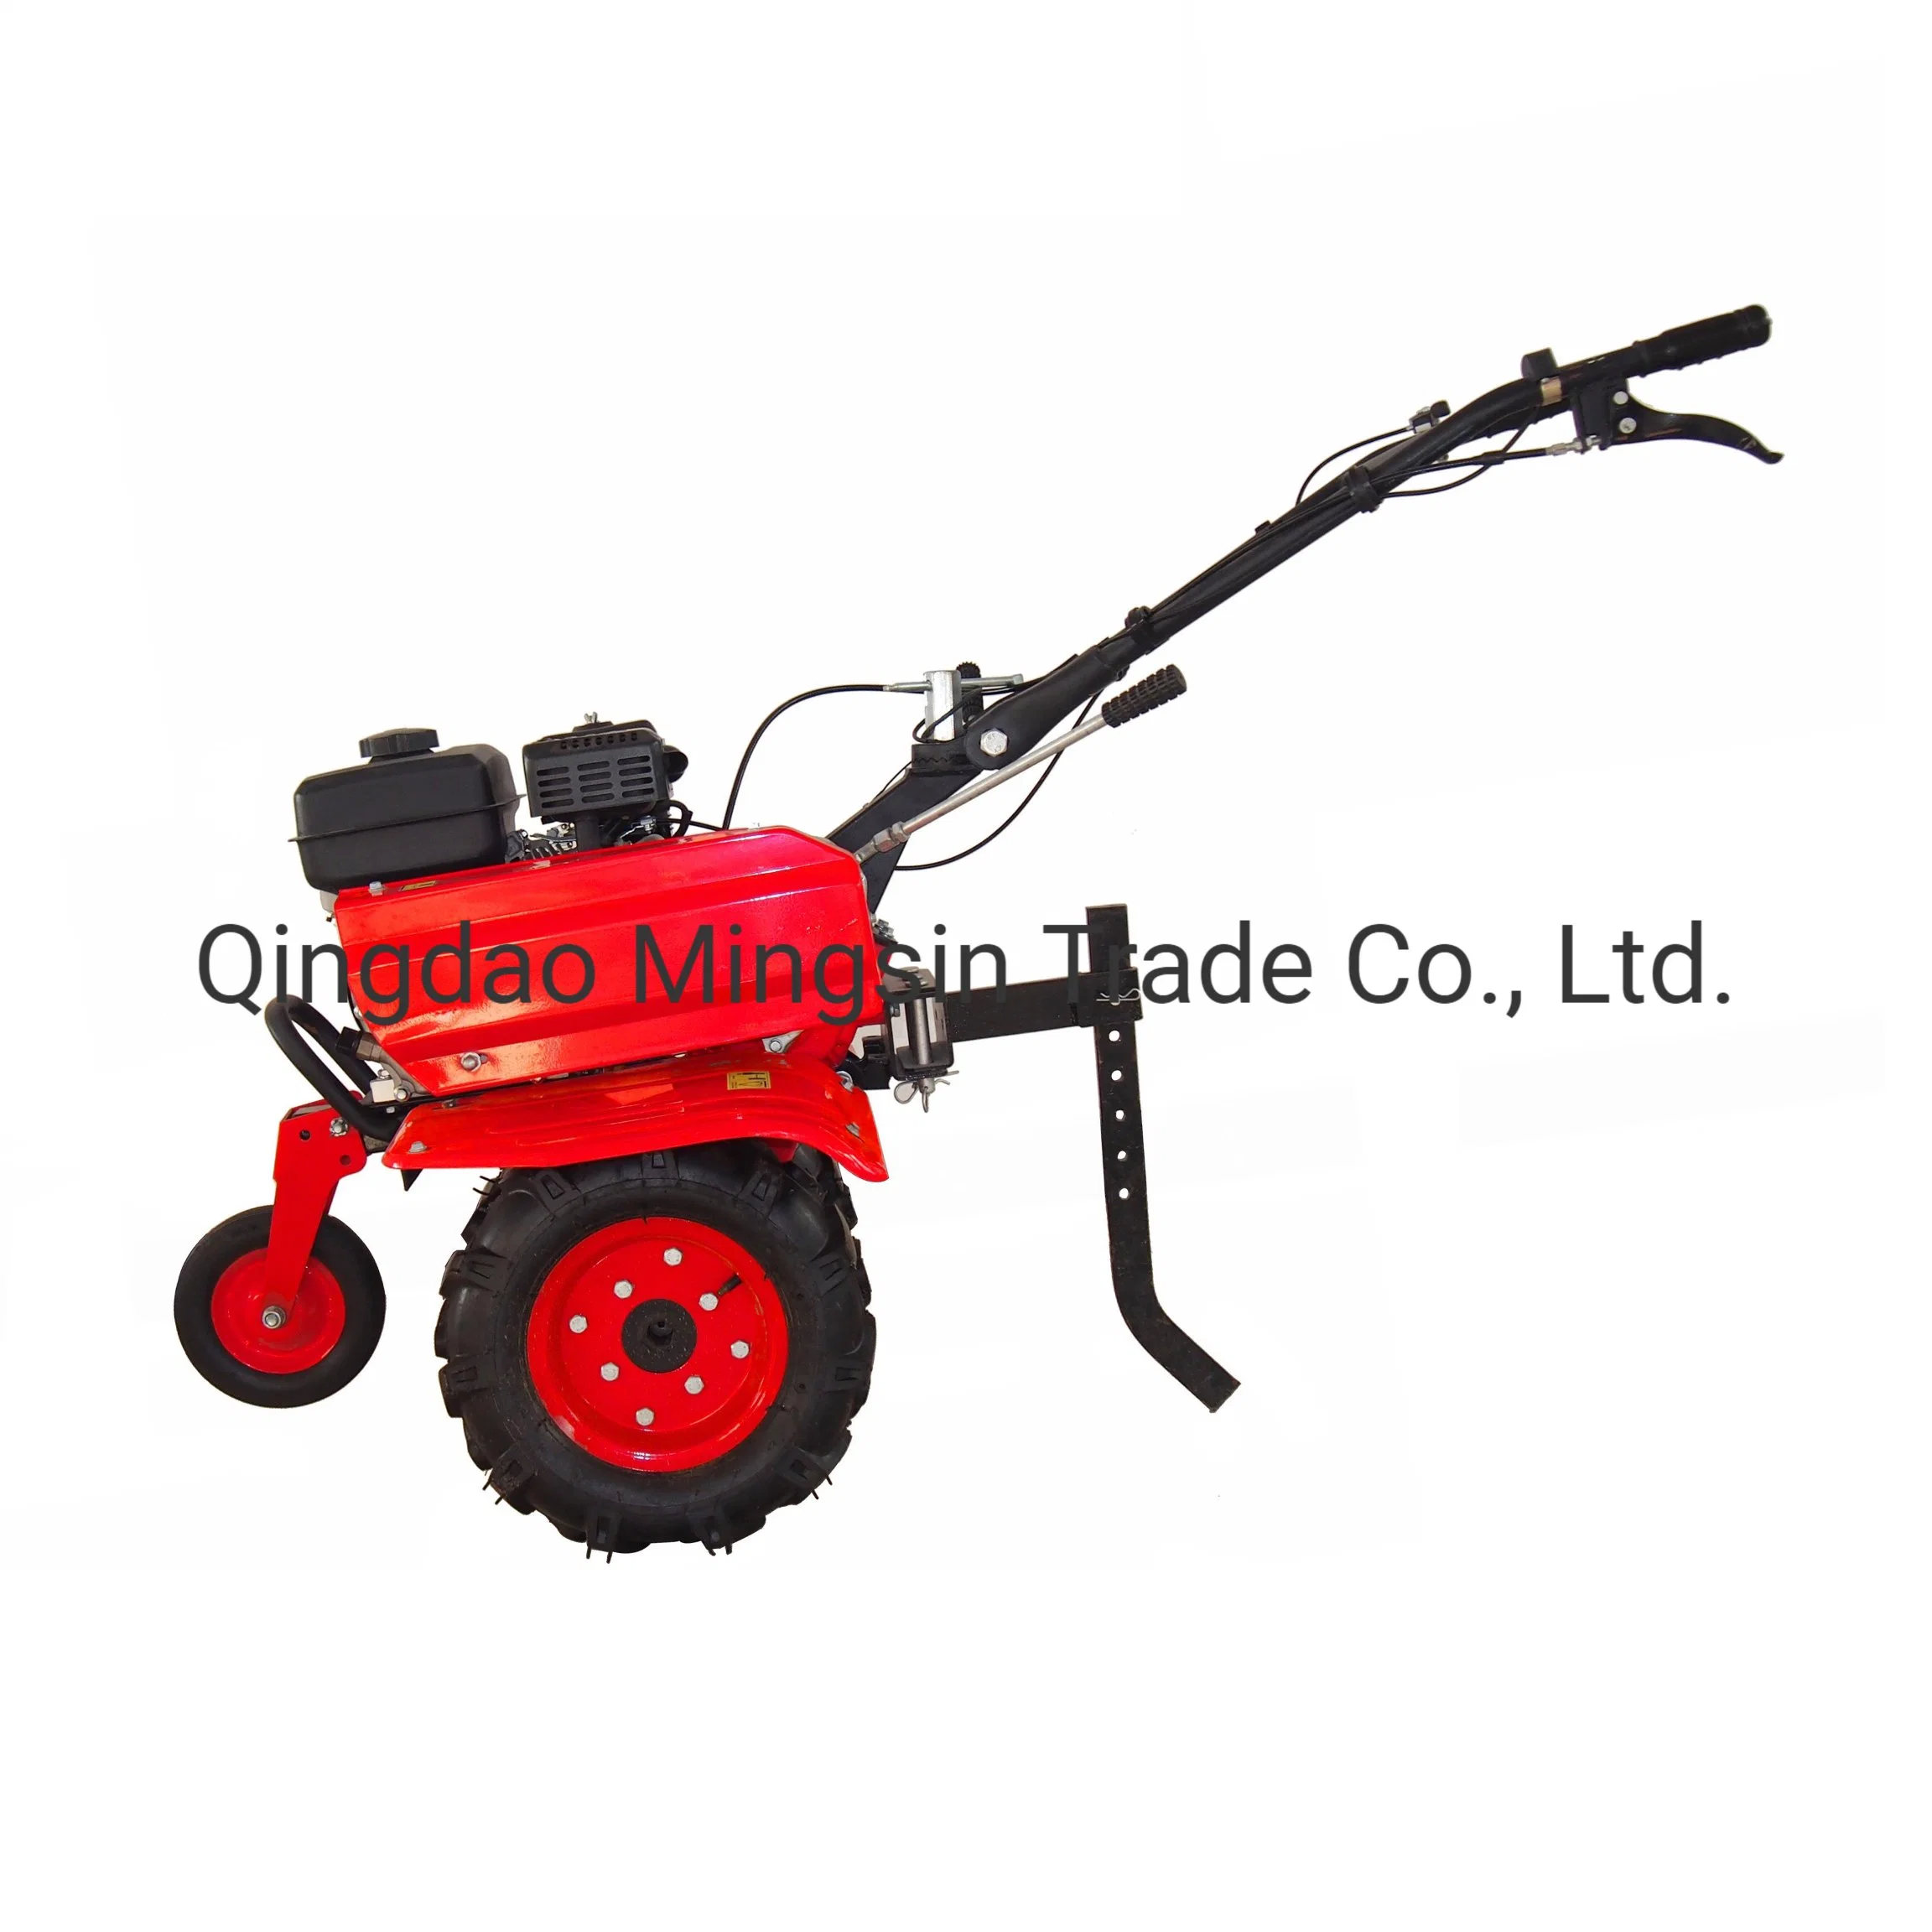 Farm Power Tiller, Cultivateur, Mini Tiller, Modèle Gt500A/Gt900A